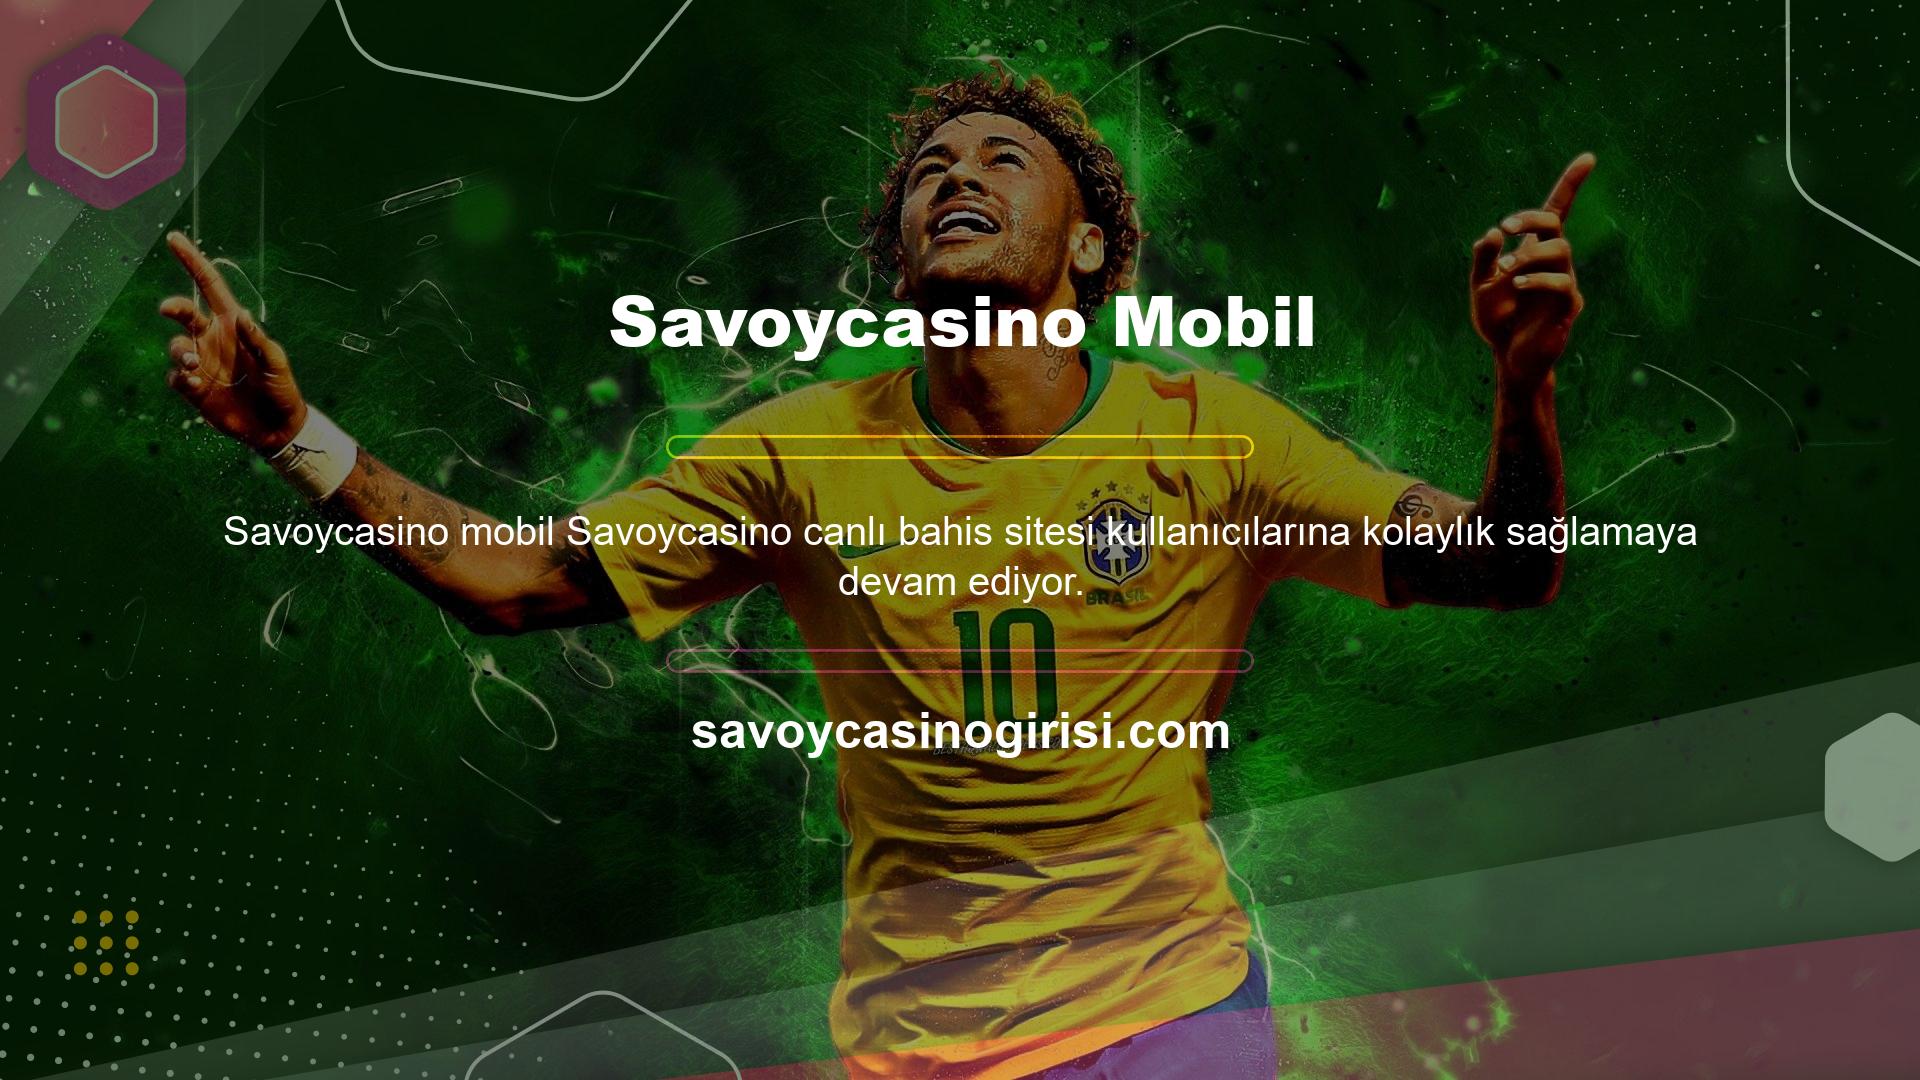 Savoycasino web sitesine erişimi kolaylaştırmak için oluşturulan mobil uygulama, üyelerin internet erişimi olan herhangi bir cihazdan siteye erişmesine olanak tanır